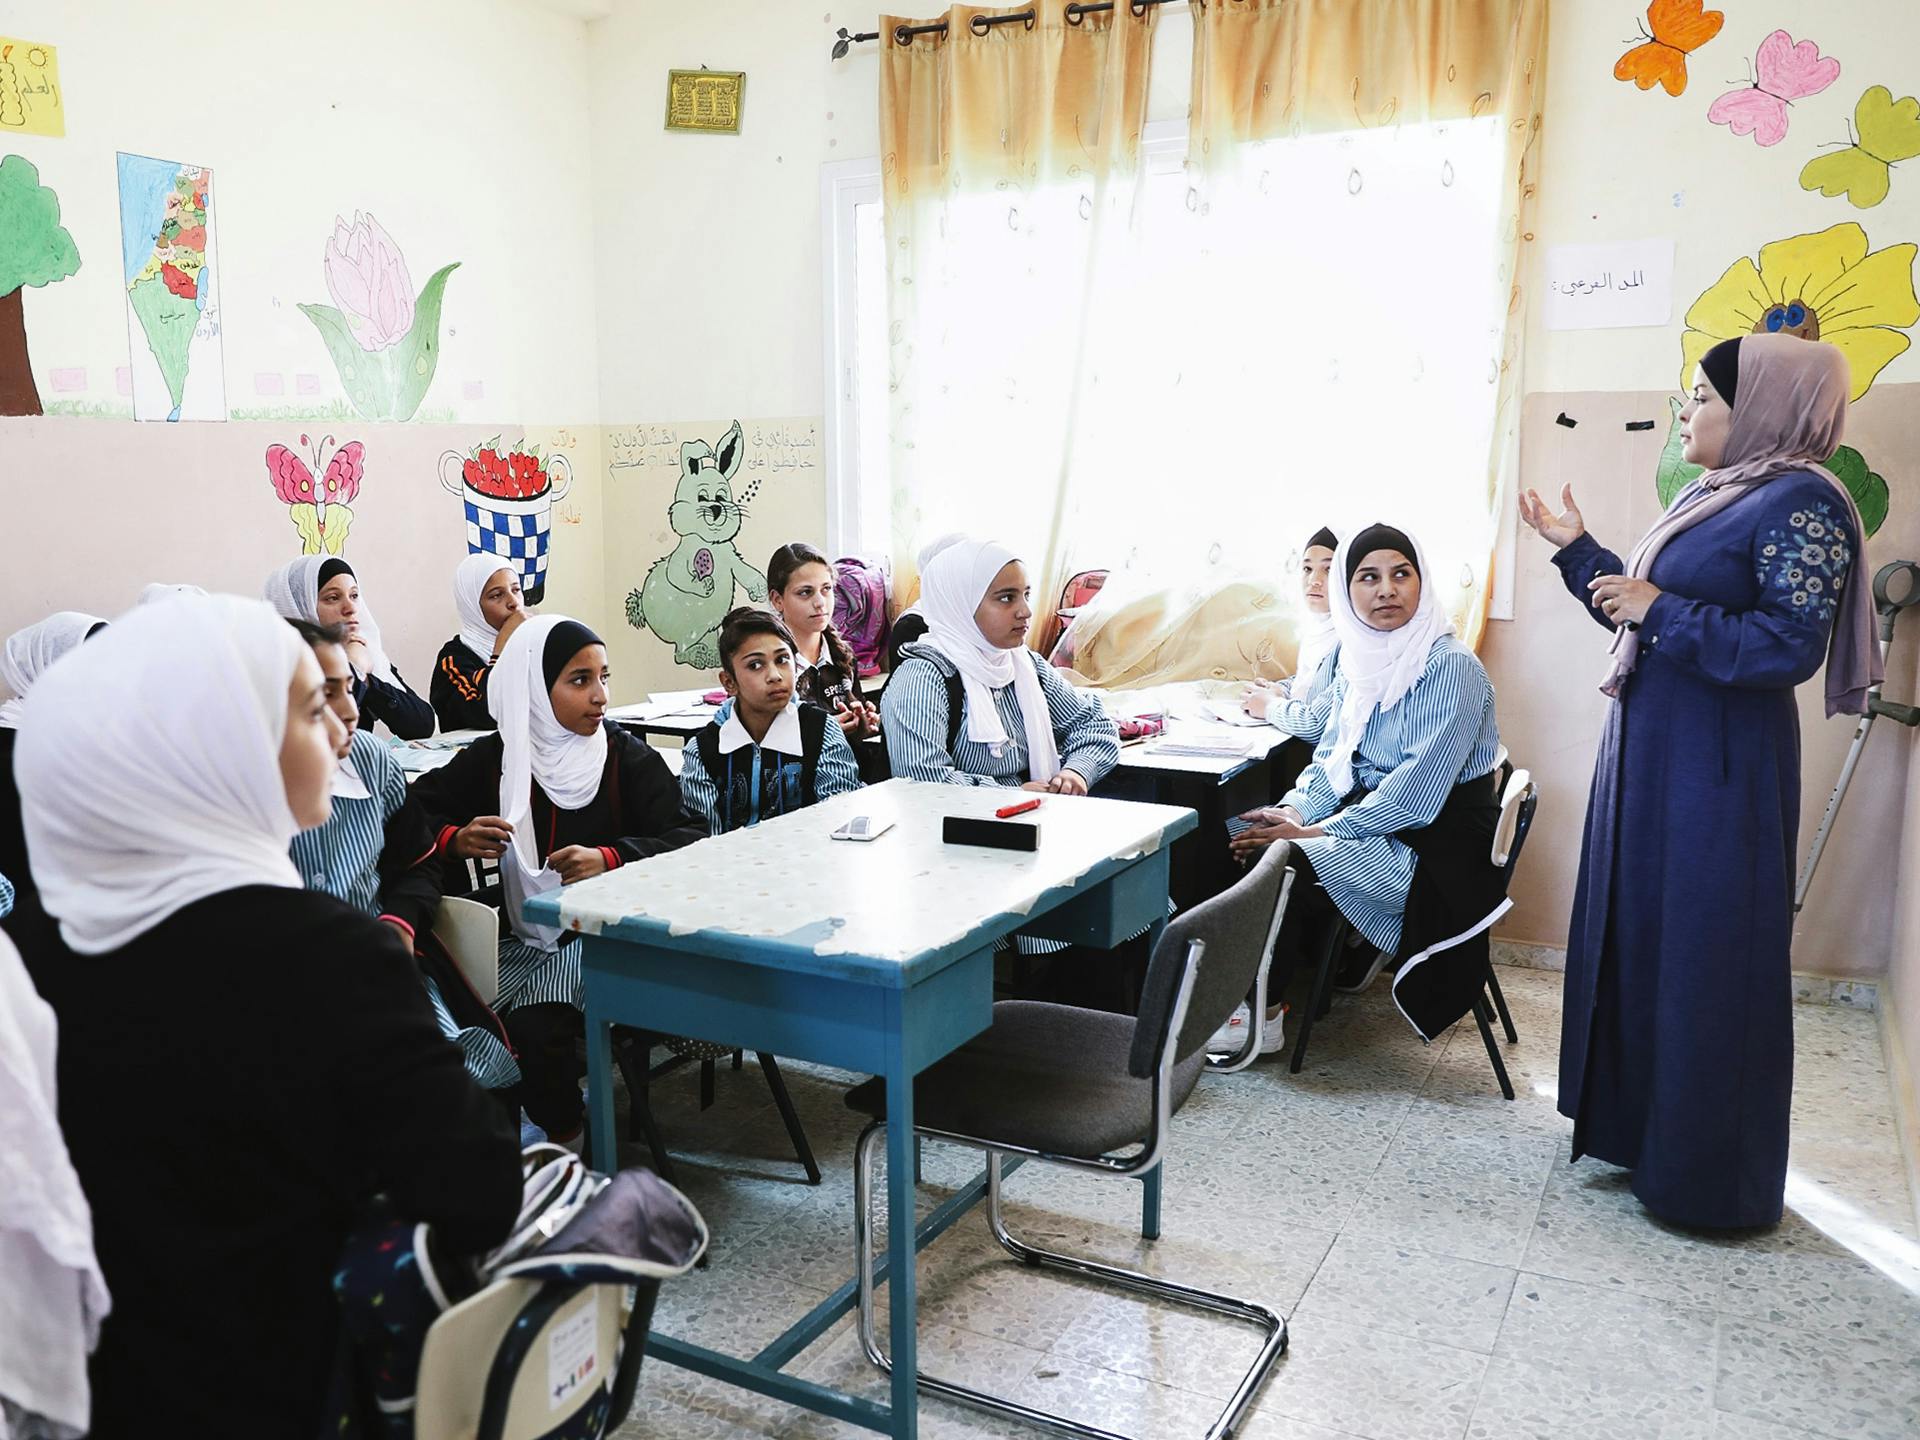 Ett klassrum i Palestina med unga flickor och en lärare. Väggarna är målade med olika motiv.